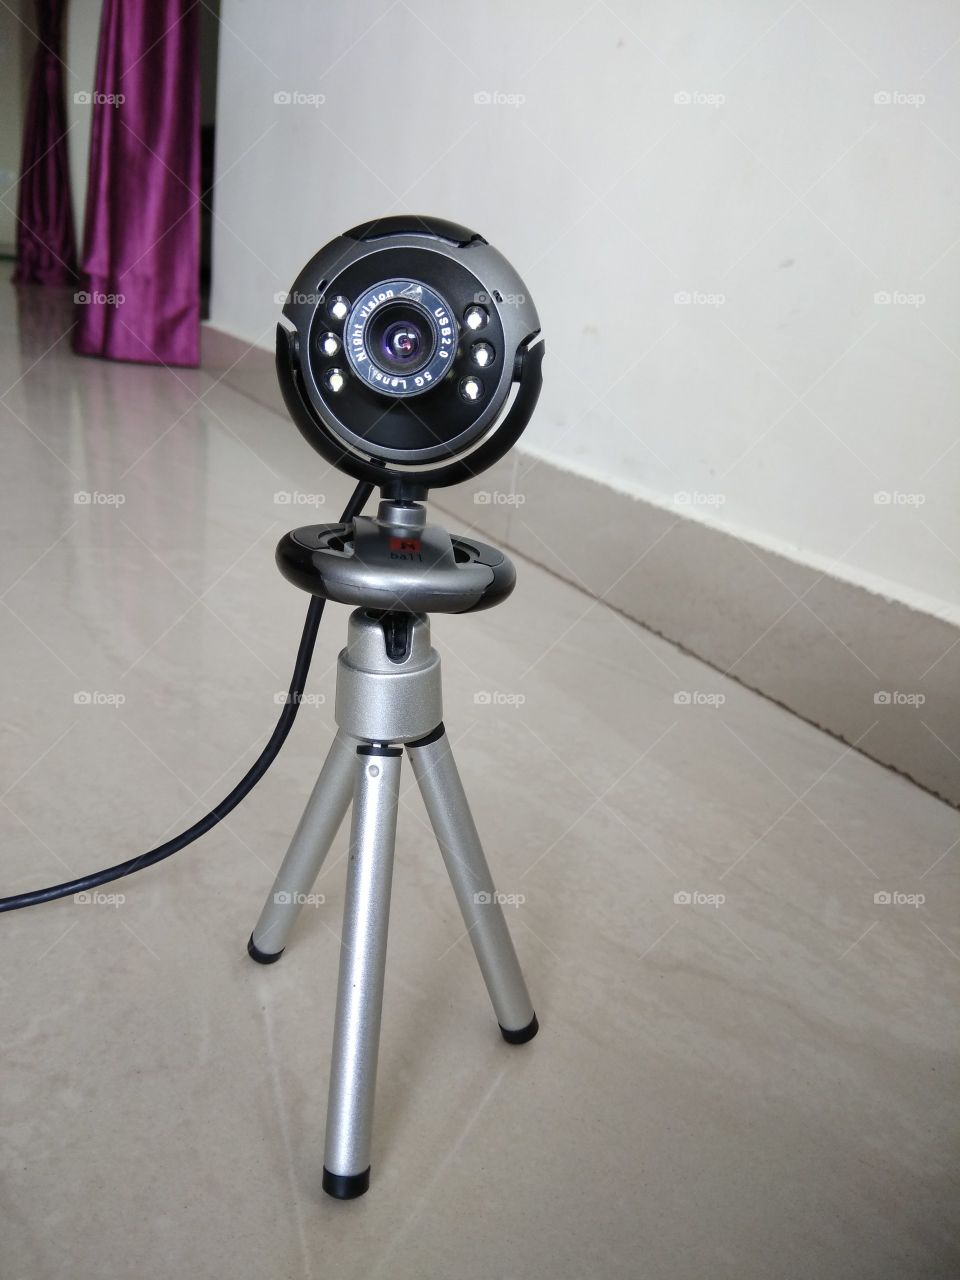 web cam